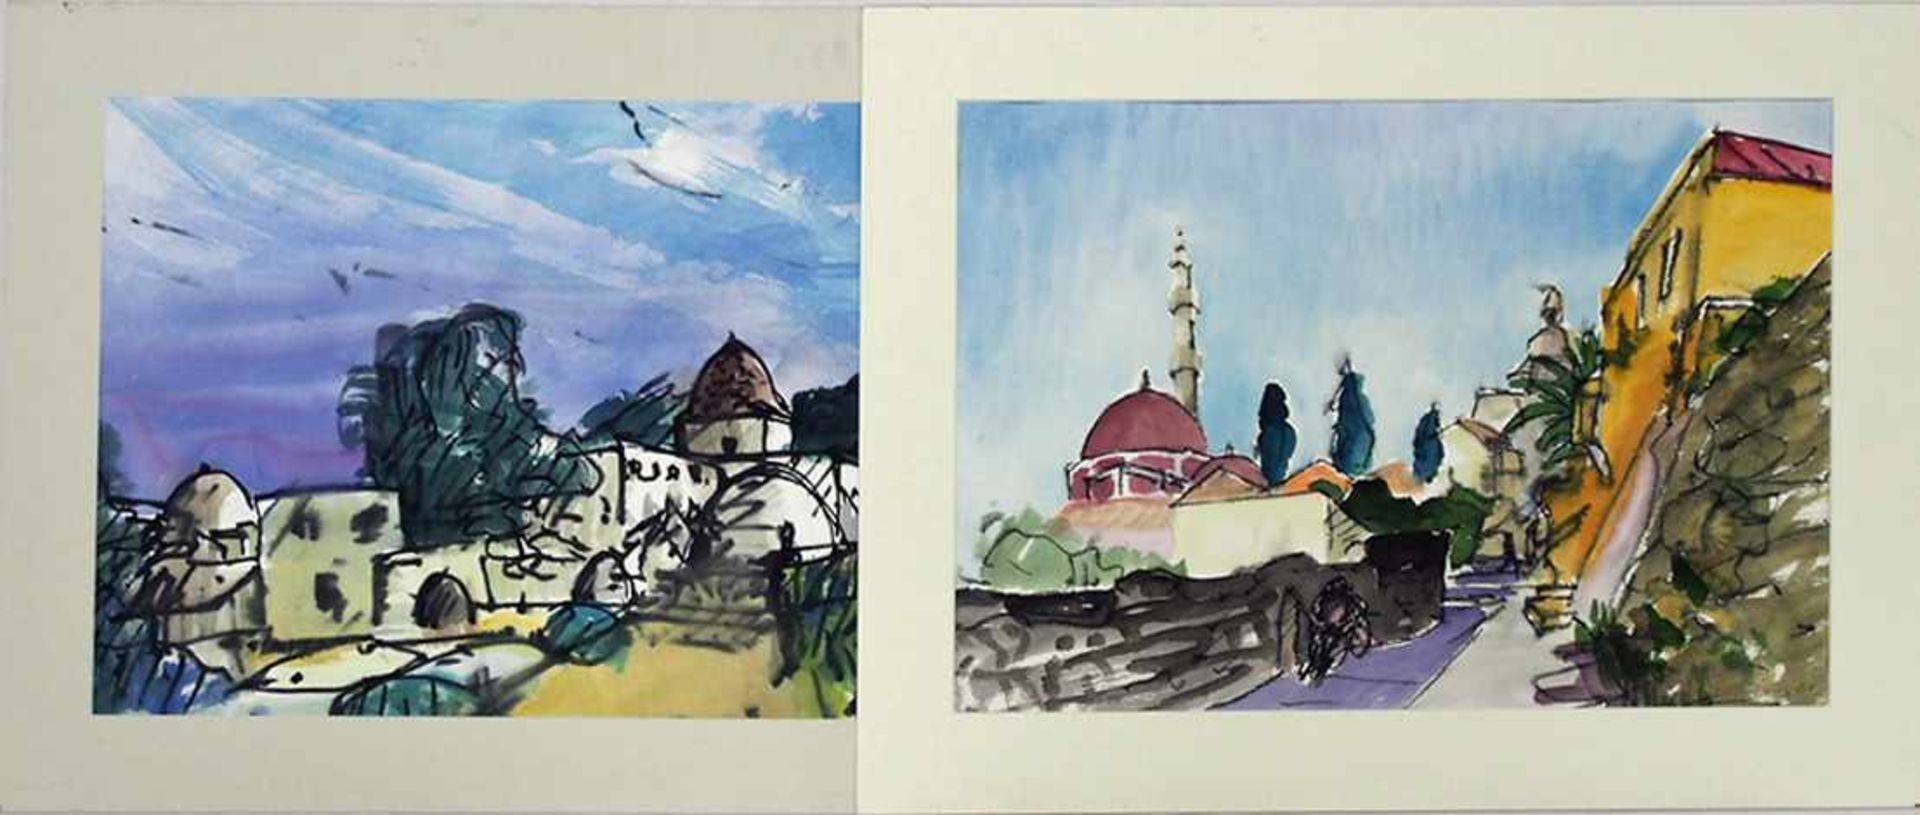 SCHIEMANN, Friedrich1918-1991Zwei orientalische LandschaftenAquarelle auf Papier, signiert unten